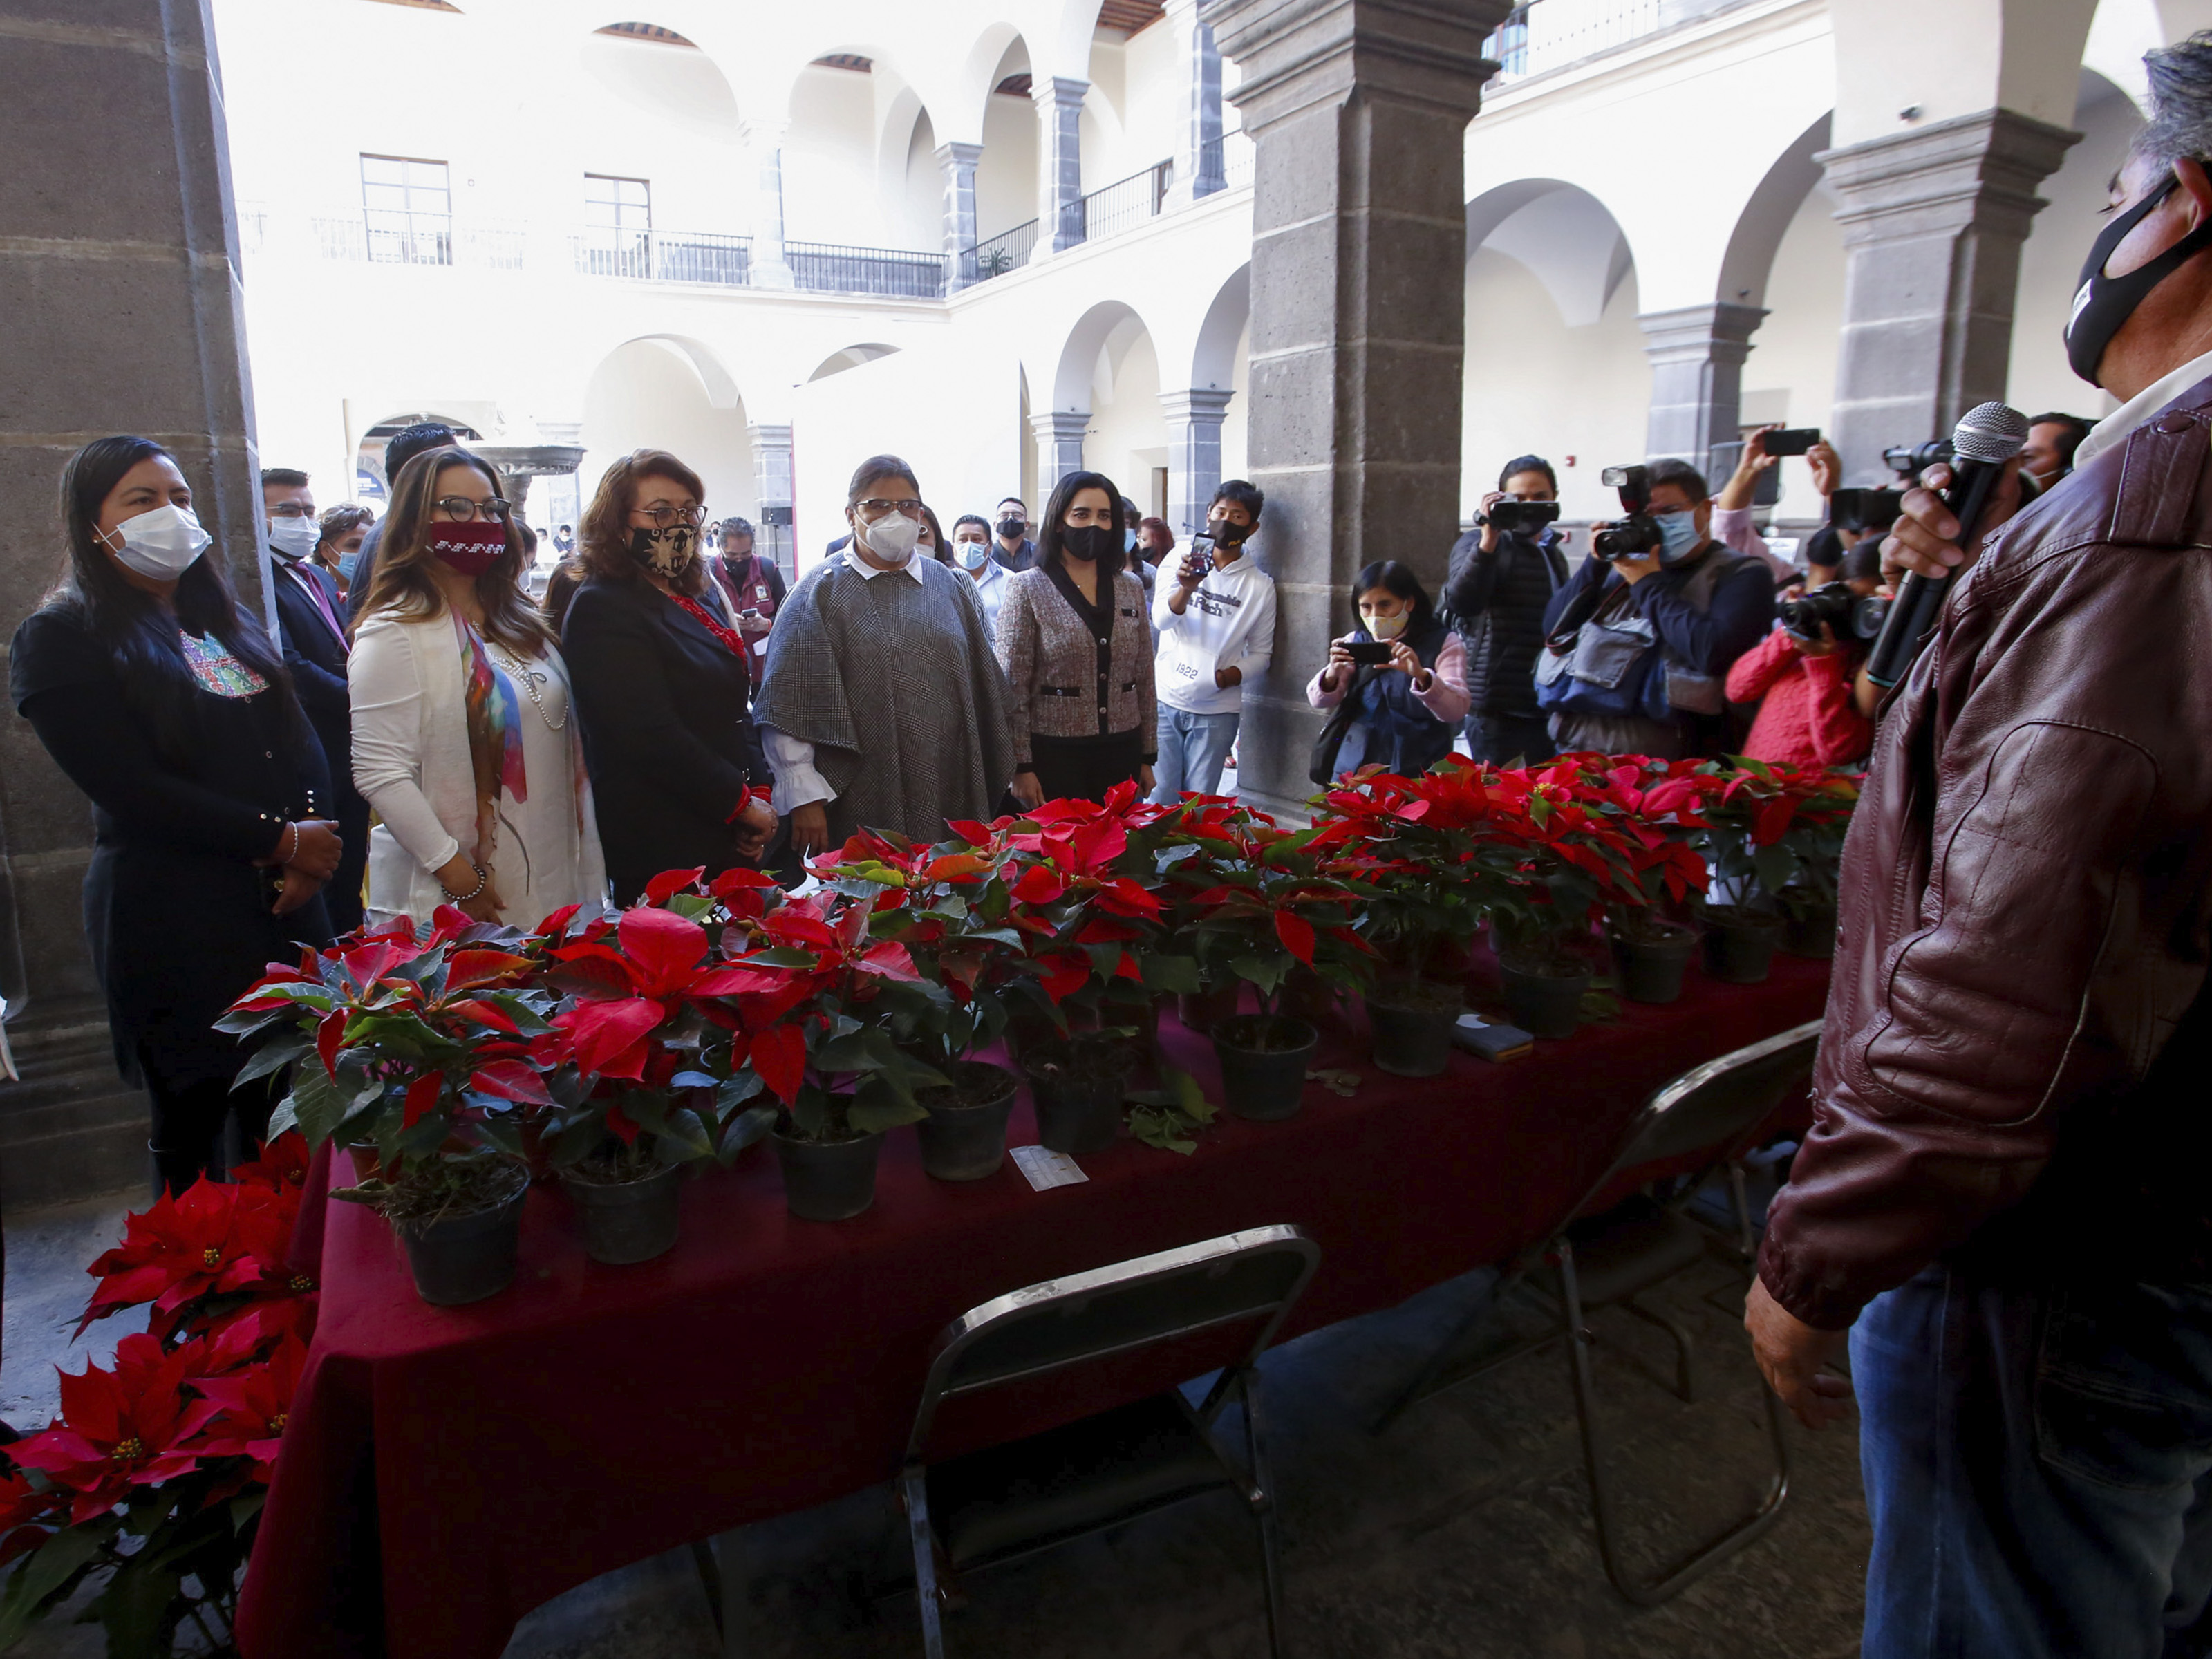 Inaugura Rosario Orozco Caballero “Navidad Orgullo Puebla”